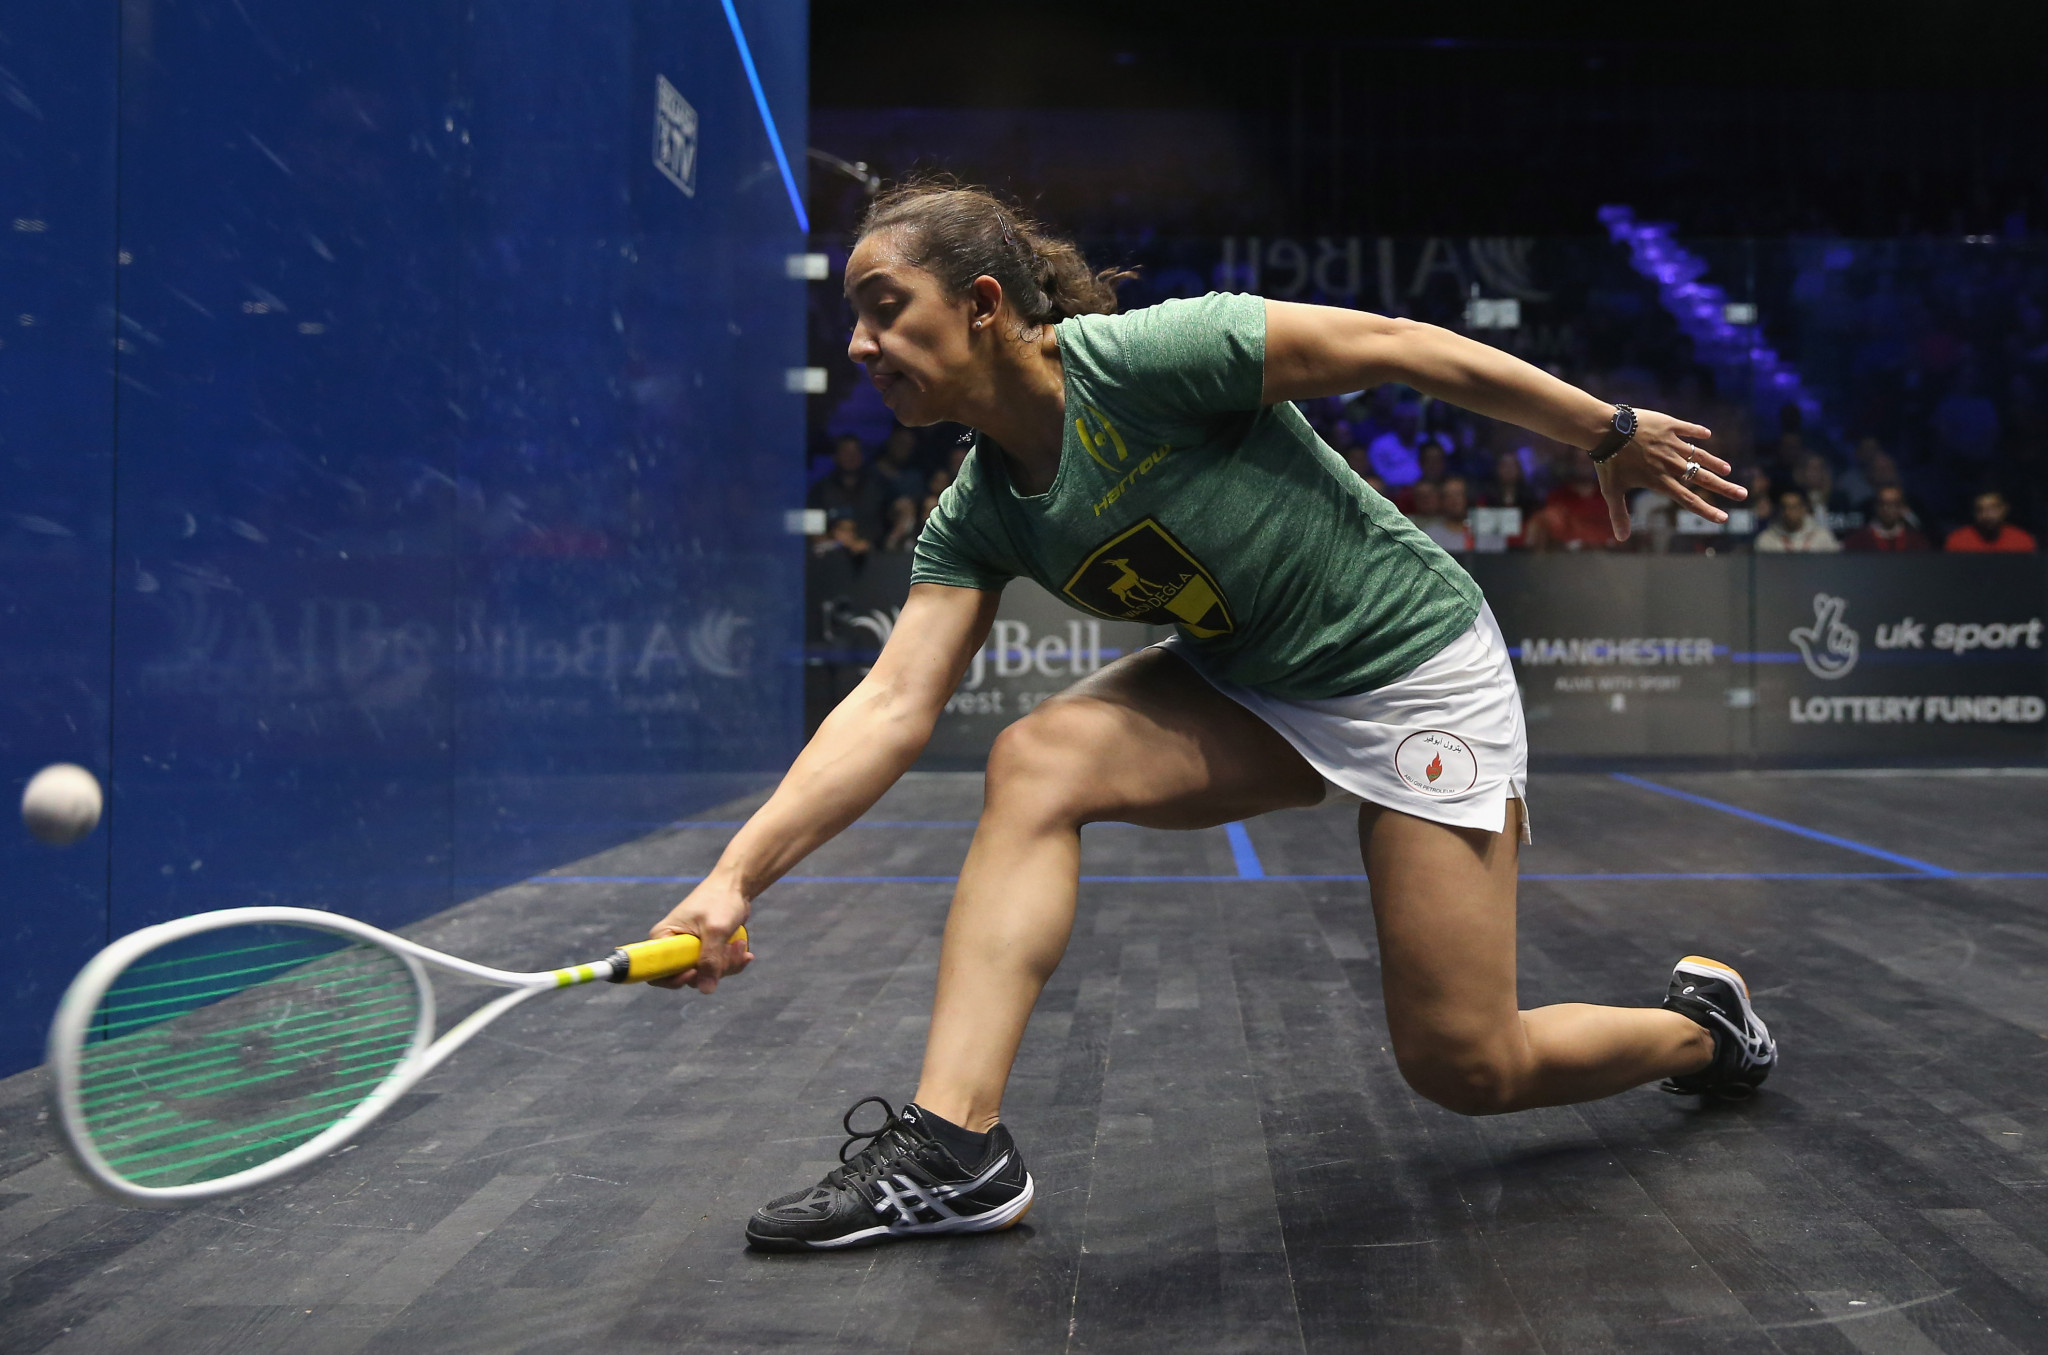 El Welily battles into PSA Saudi Women's Masters semi-finals